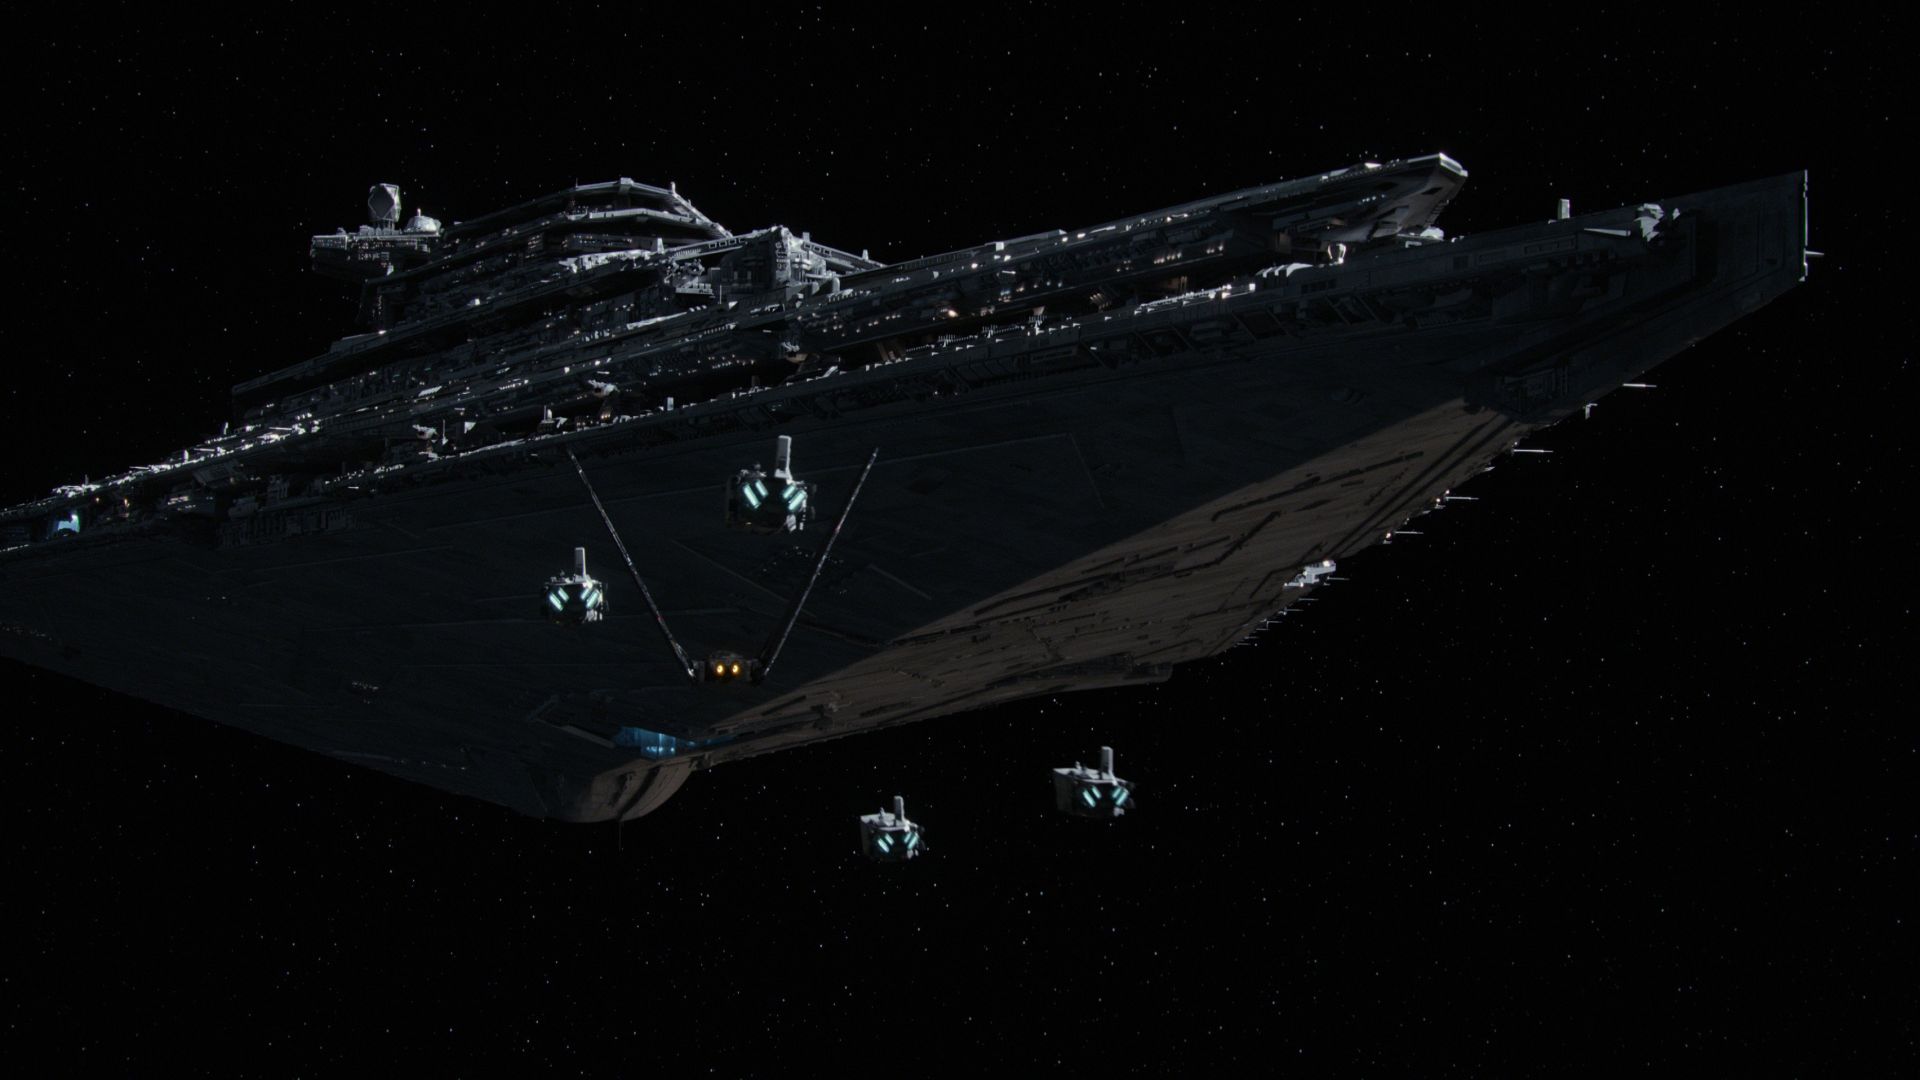 Звёздные войны: Пробуждение силы, космический корабль, Star Wars: Episode VII - The Force Awakens, spaceship (horizontal)